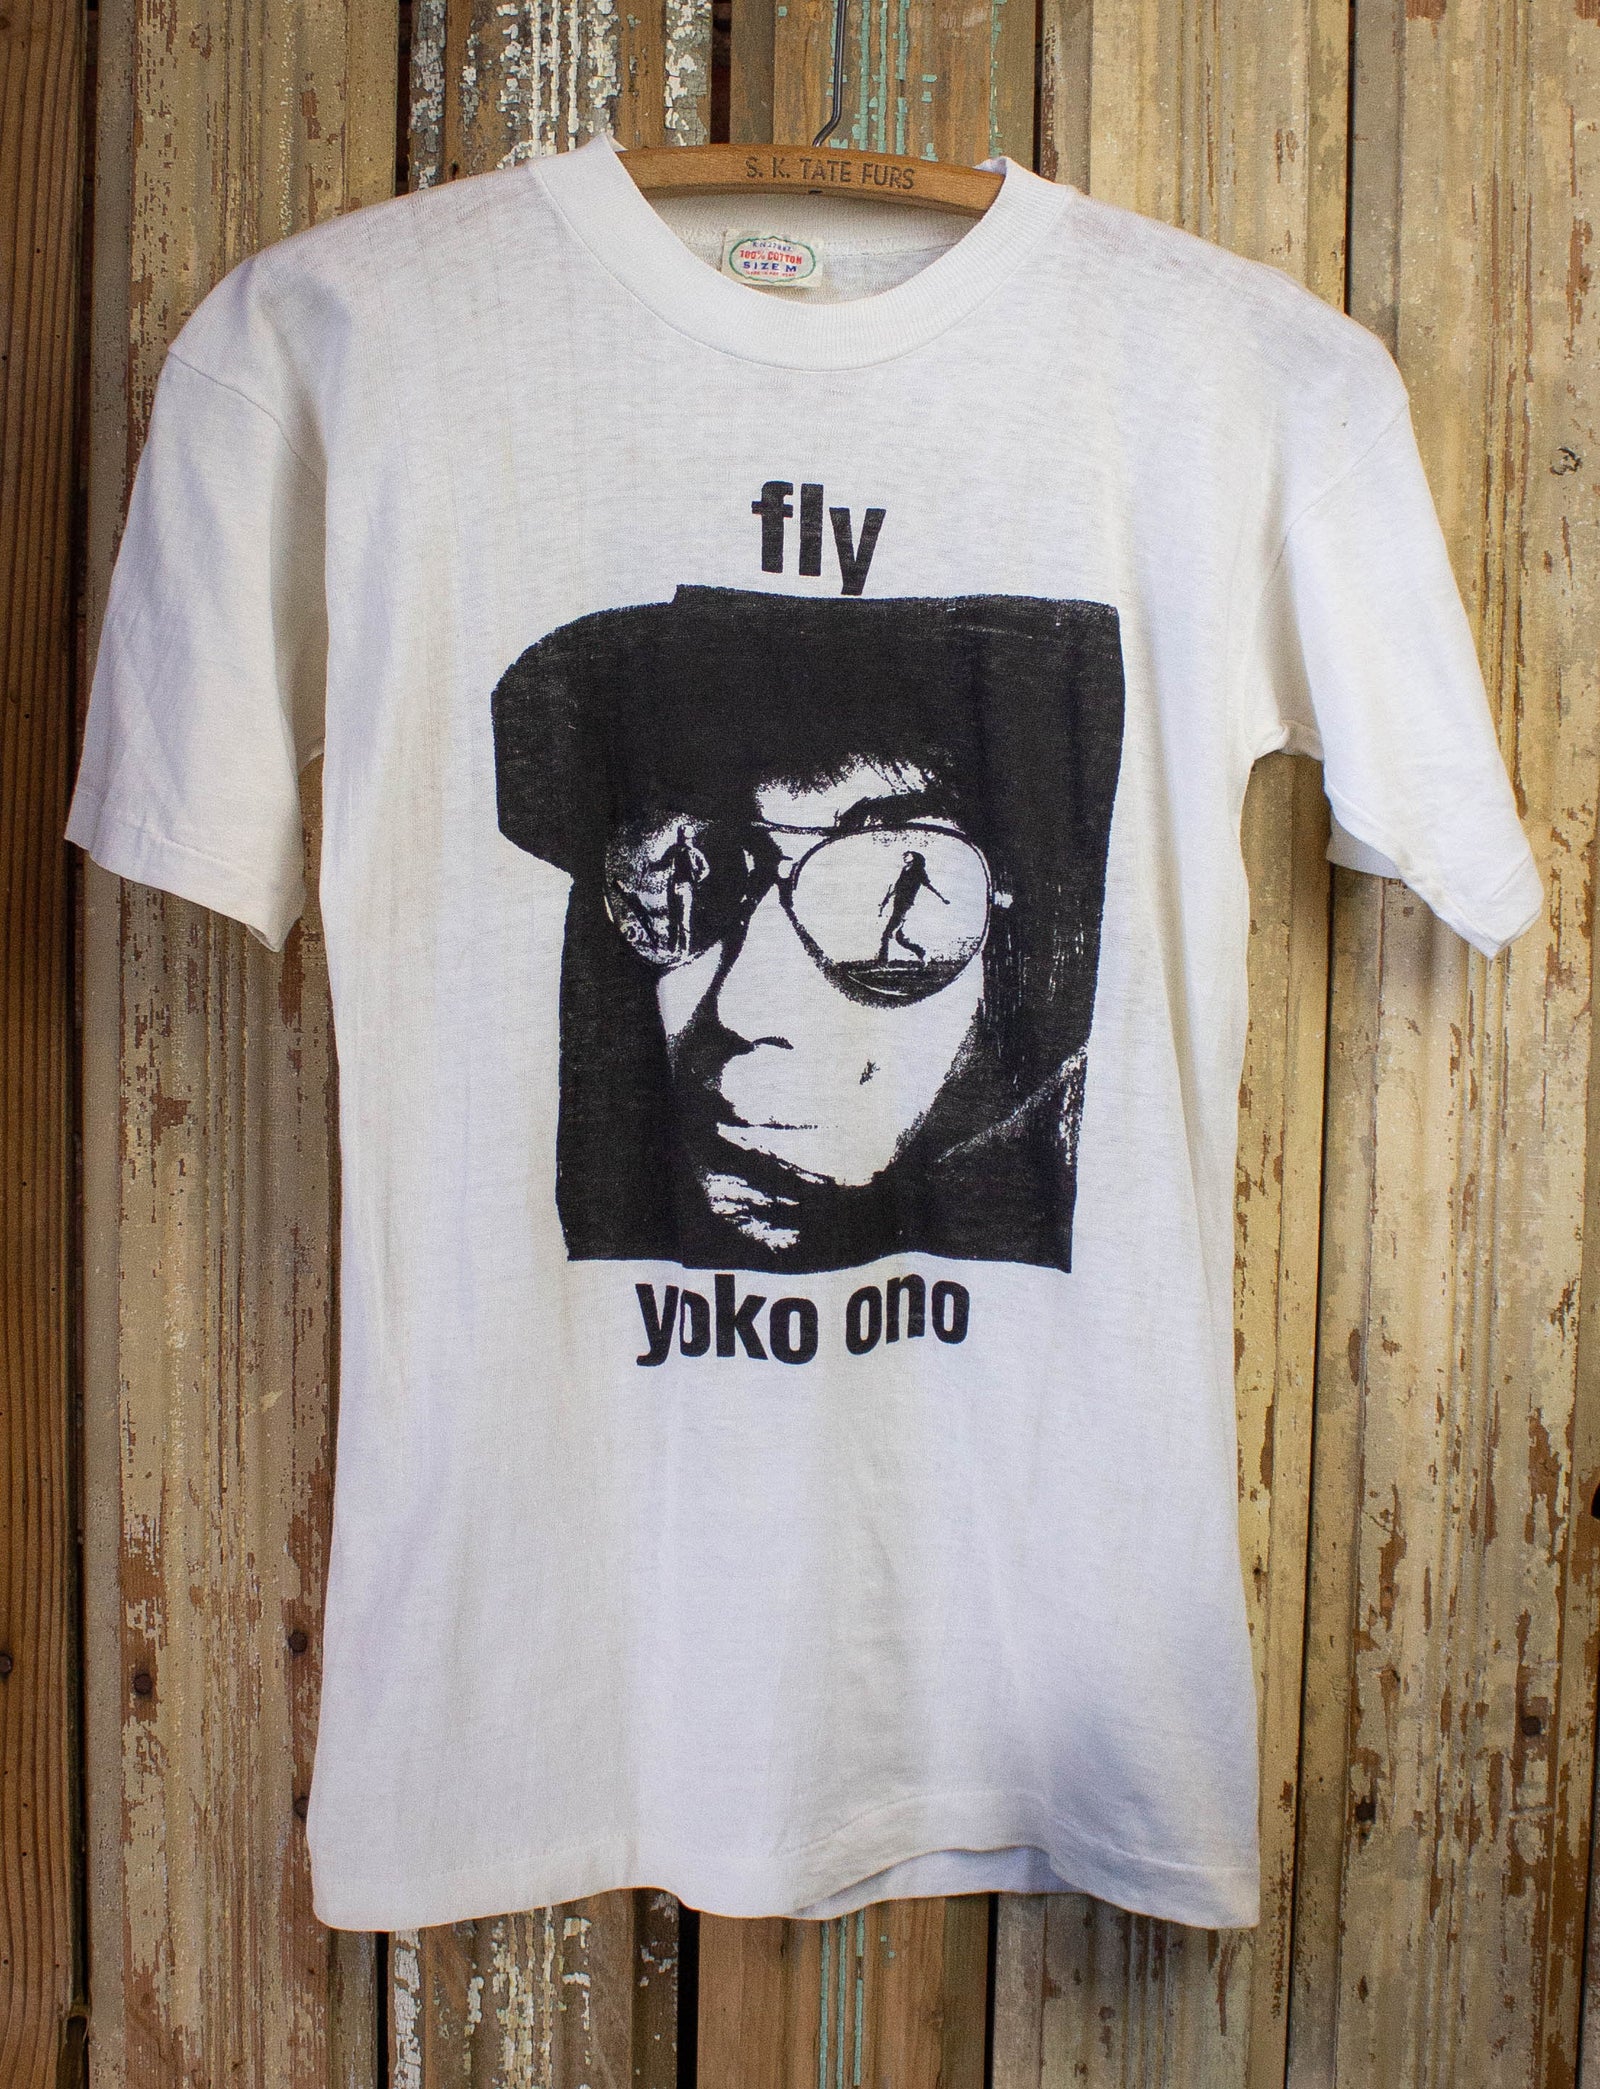 Vintage】YOKO ONO Tシャツ FLY オノ・ヨーコ L www.sudouestprimeurs.fr